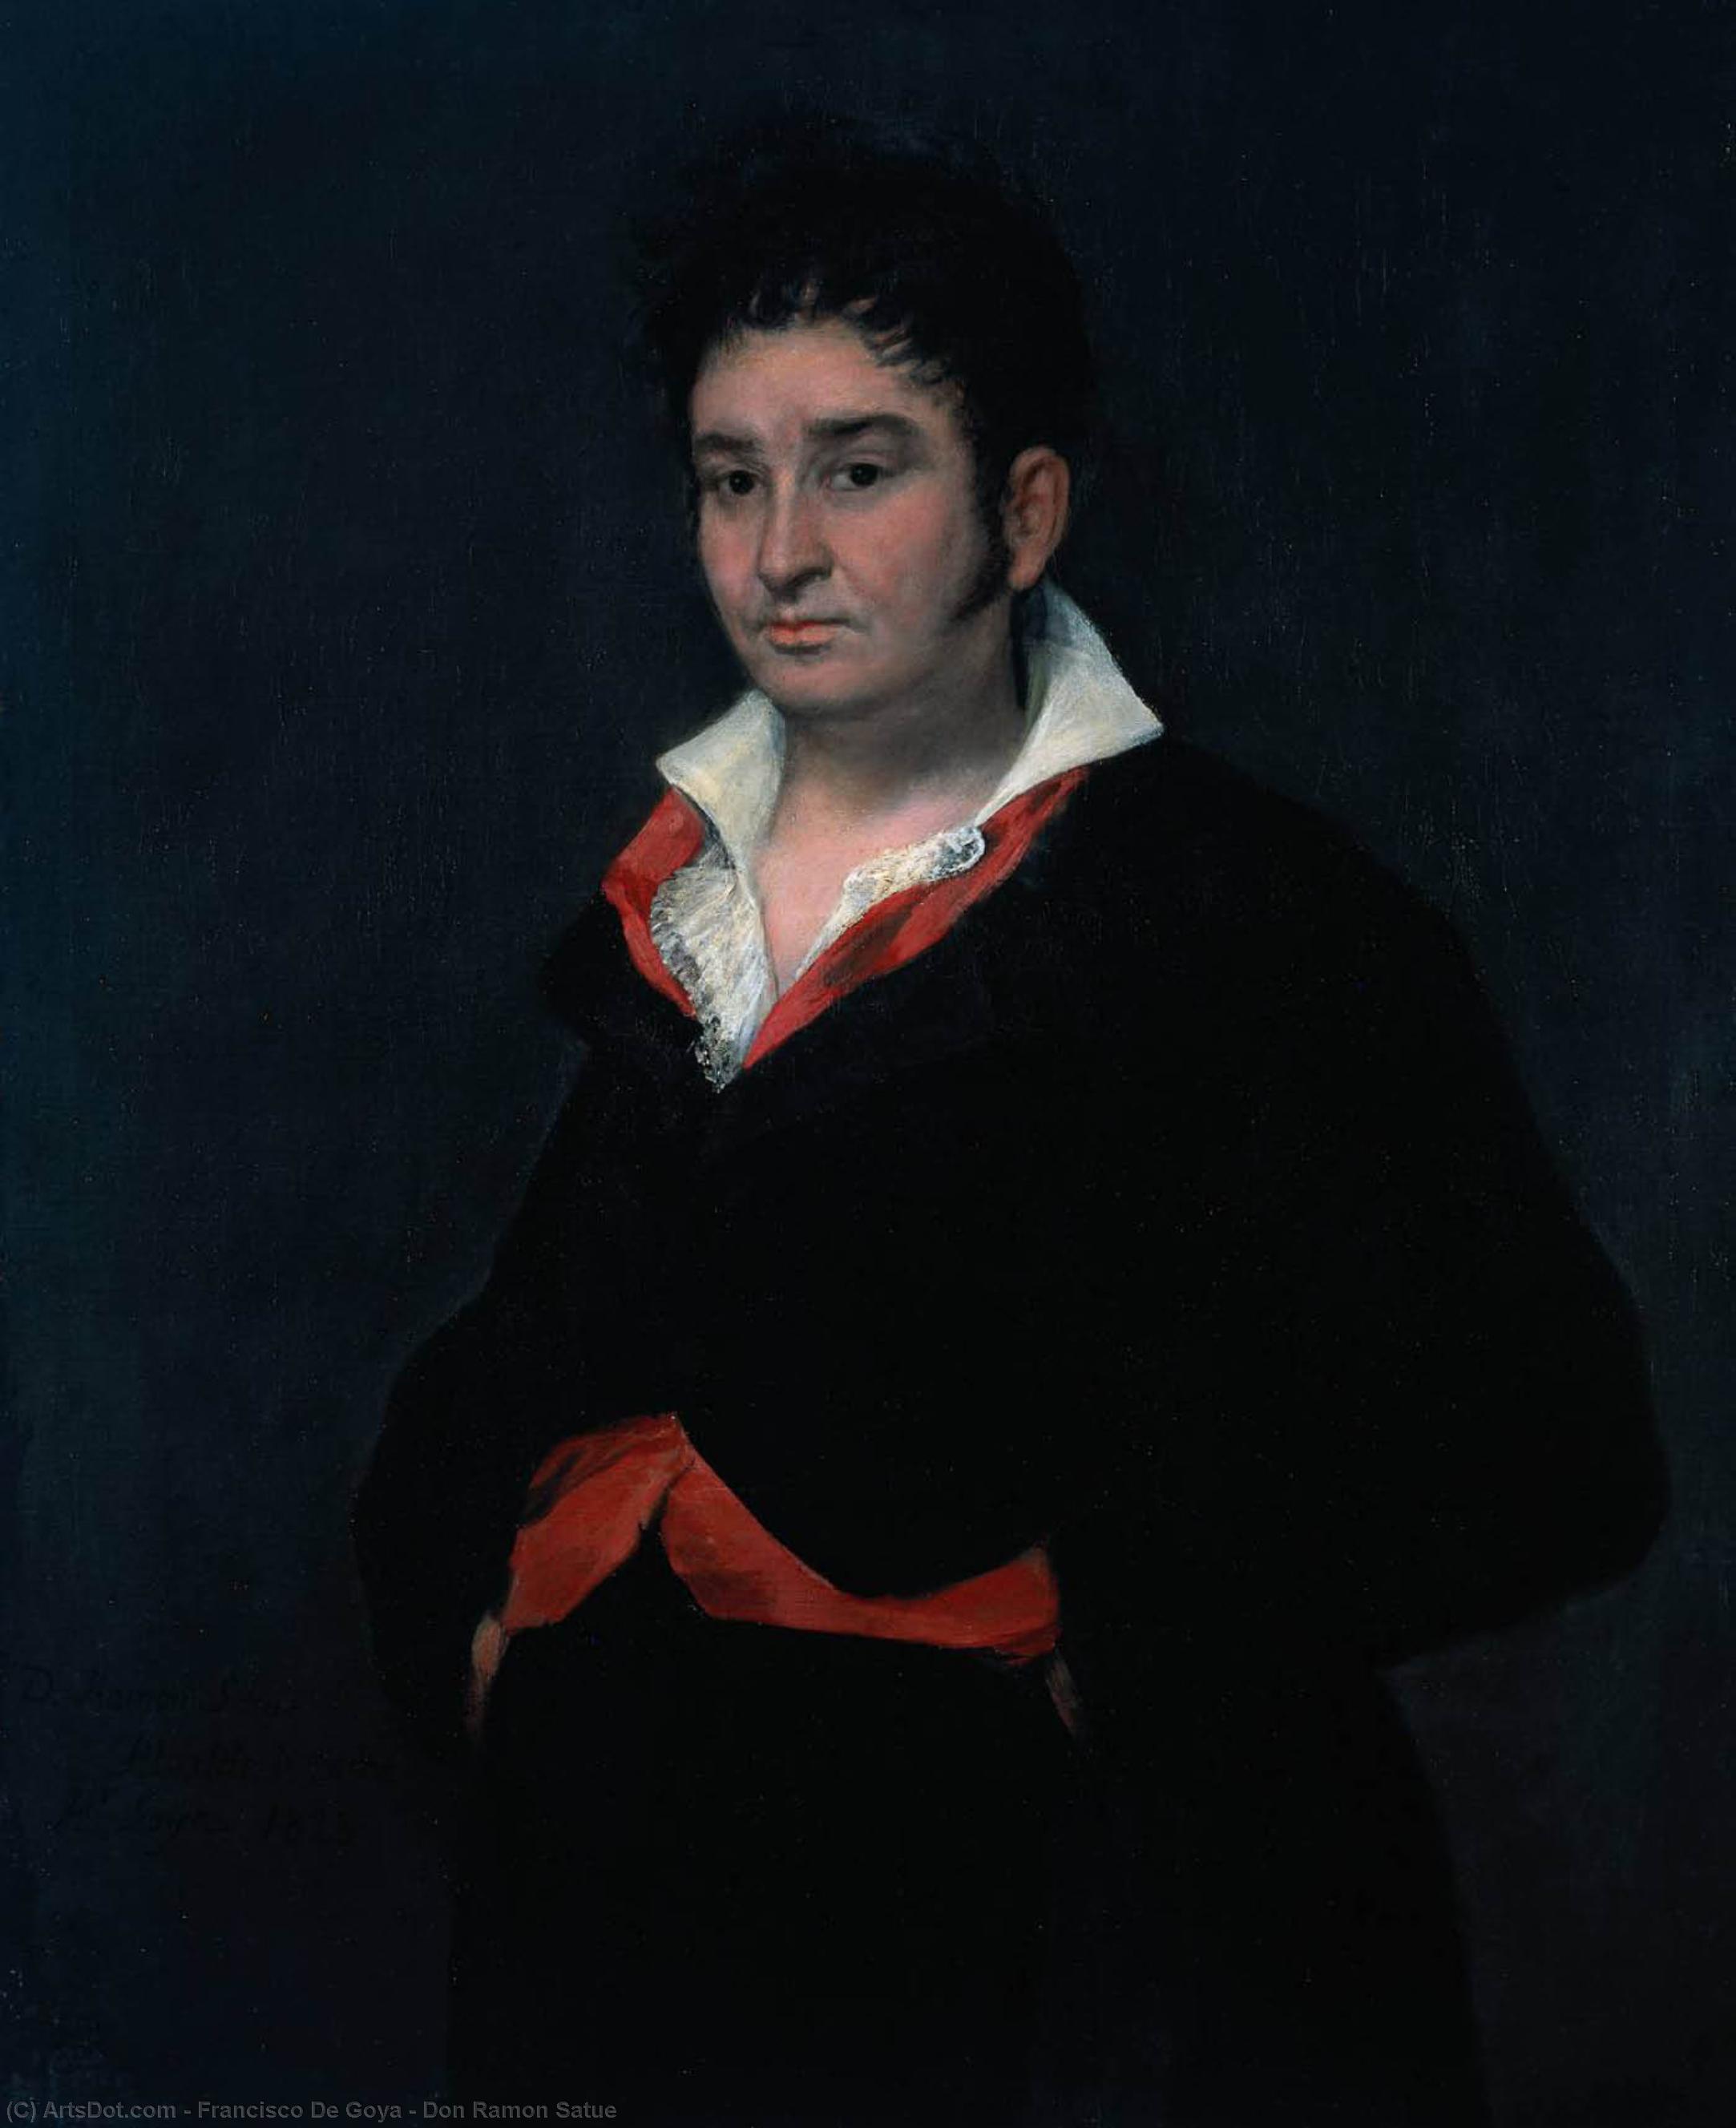 WikiOO.org - אנציקלופדיה לאמנויות יפות - ציור, יצירות אמנות Francisco De Goya - Don Ramon Satue